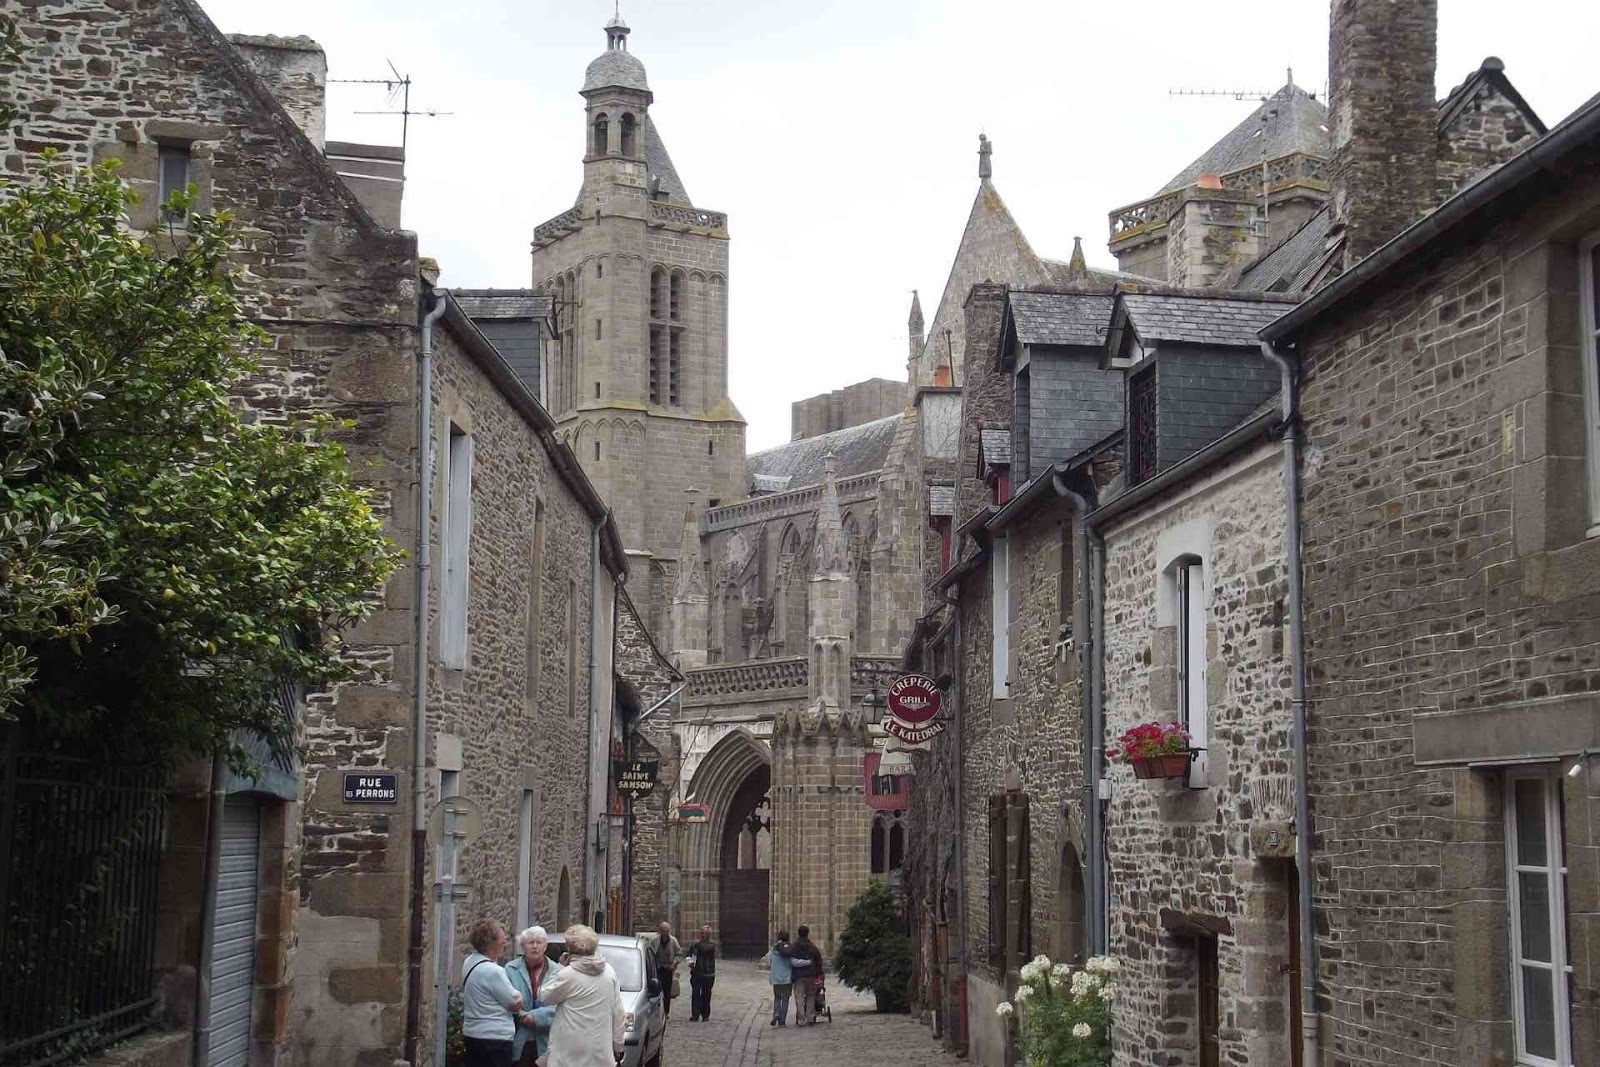 La rue Ceinte à Dol-de-Bretagne descend vers la cathédrale Saint-Samson visible au bout de la rue. Les maisons ont une architecture du XVème et XVIème siècle.